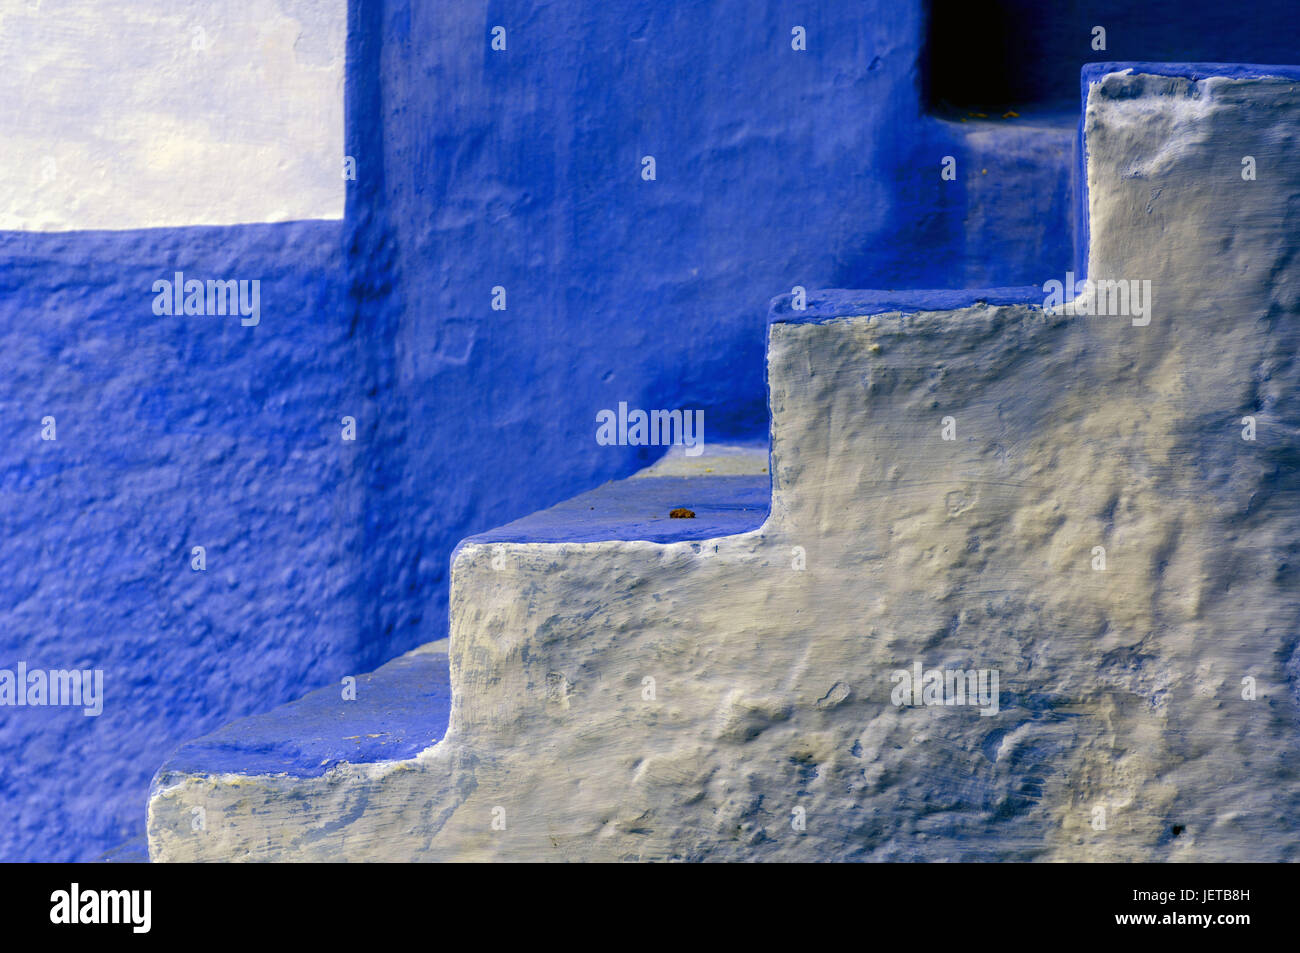 Il Marocco, Chefchaouen, mura difensive, scale, dettaglio, blu, Africa, casa, costruendo, facciata in stile architettonico, architettura, deserte, esterno, copia di spazio, Foto Stock